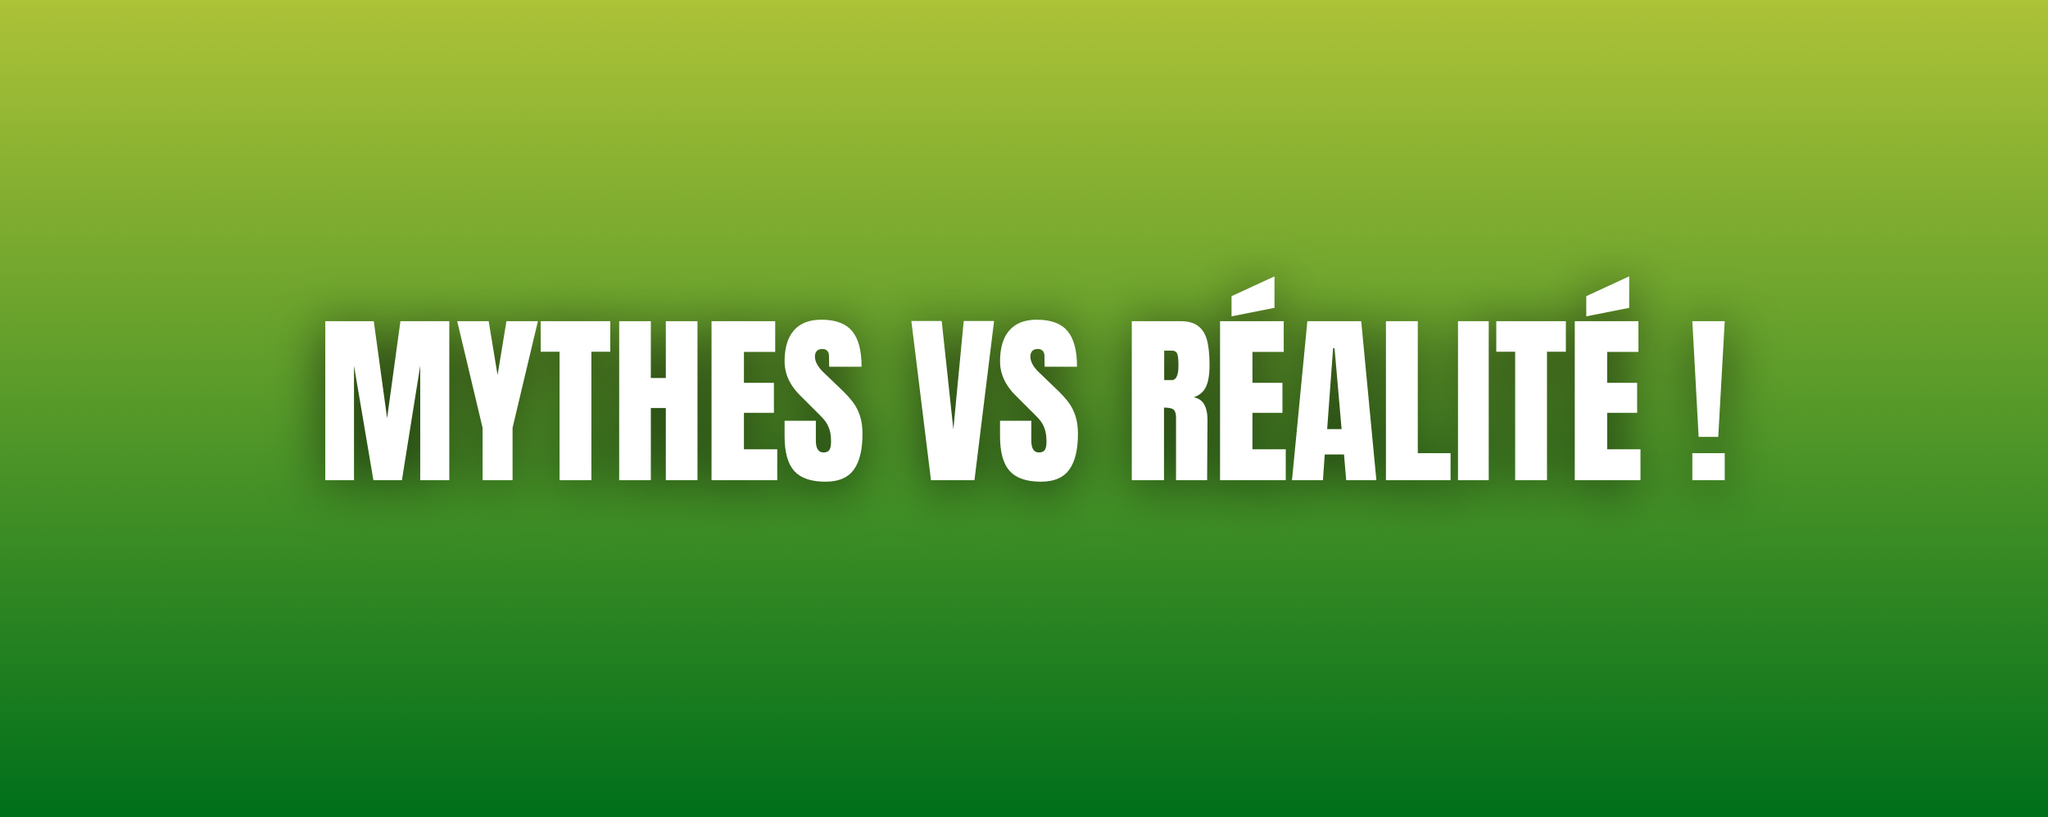 Mythes vs réalité !